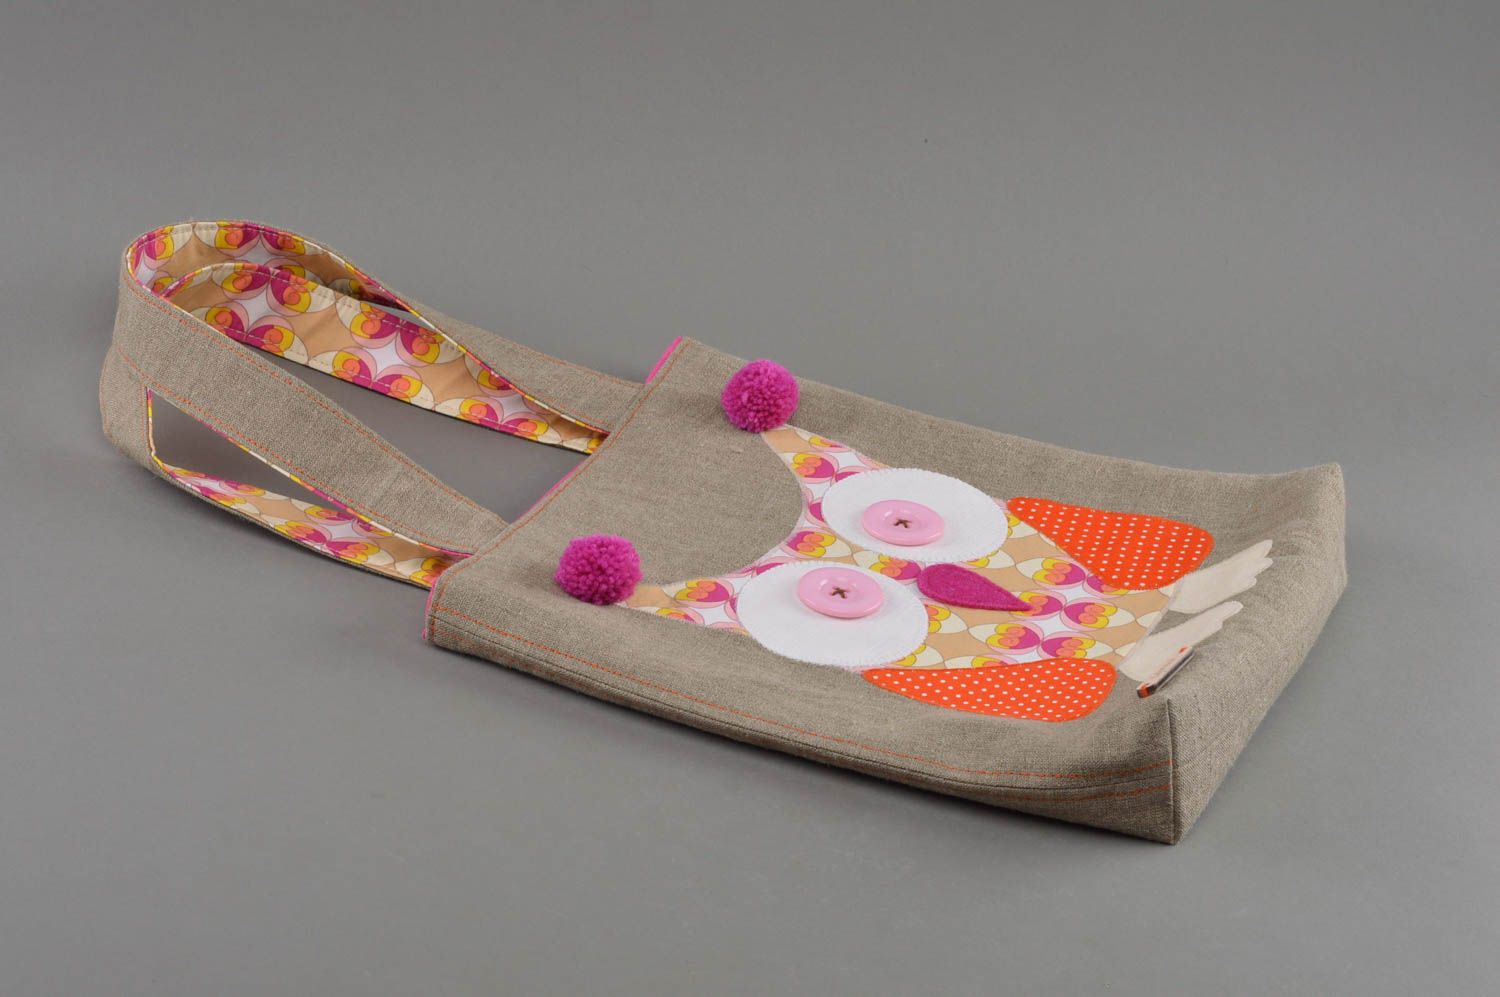 Öko Tasche aus Stoff originell handmade mit Eule schön künstlerisch für Kind foto 1